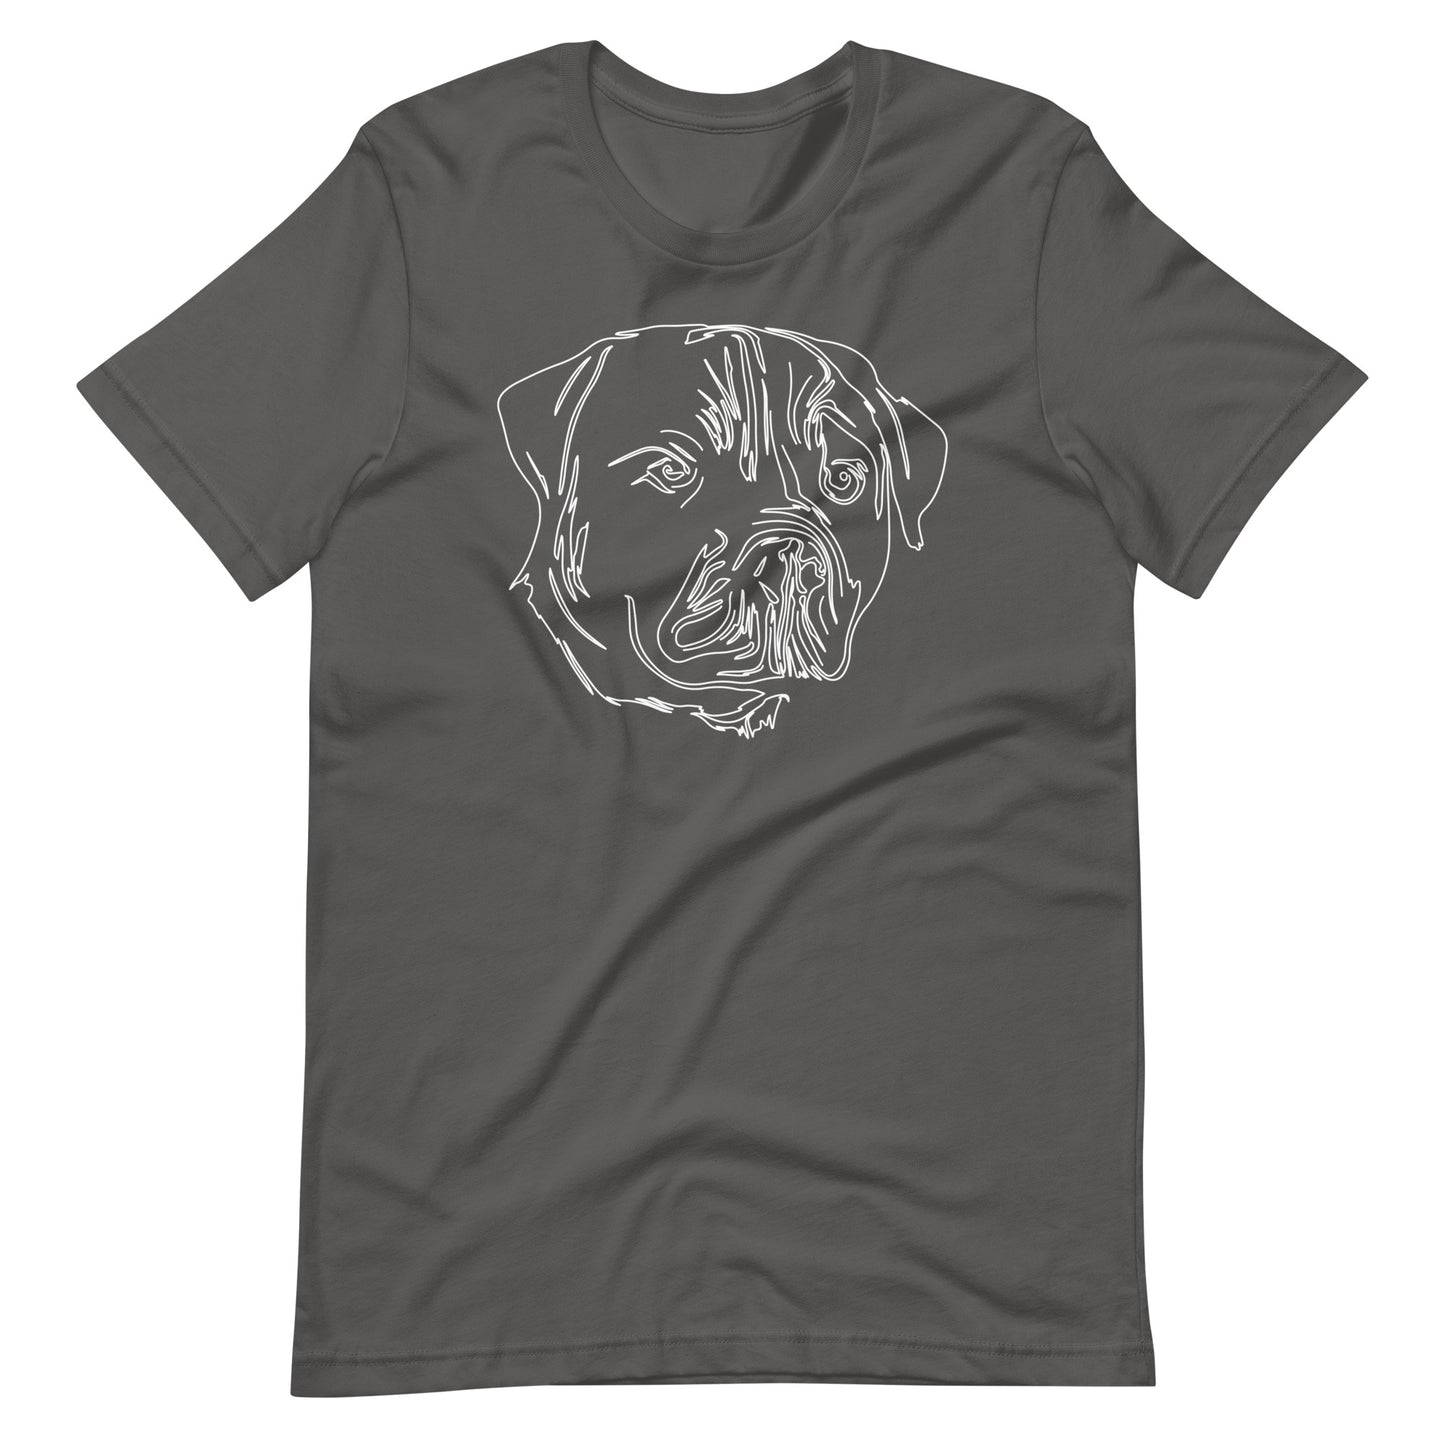 White line Rottweiler face on unisex asphalt t-shirt